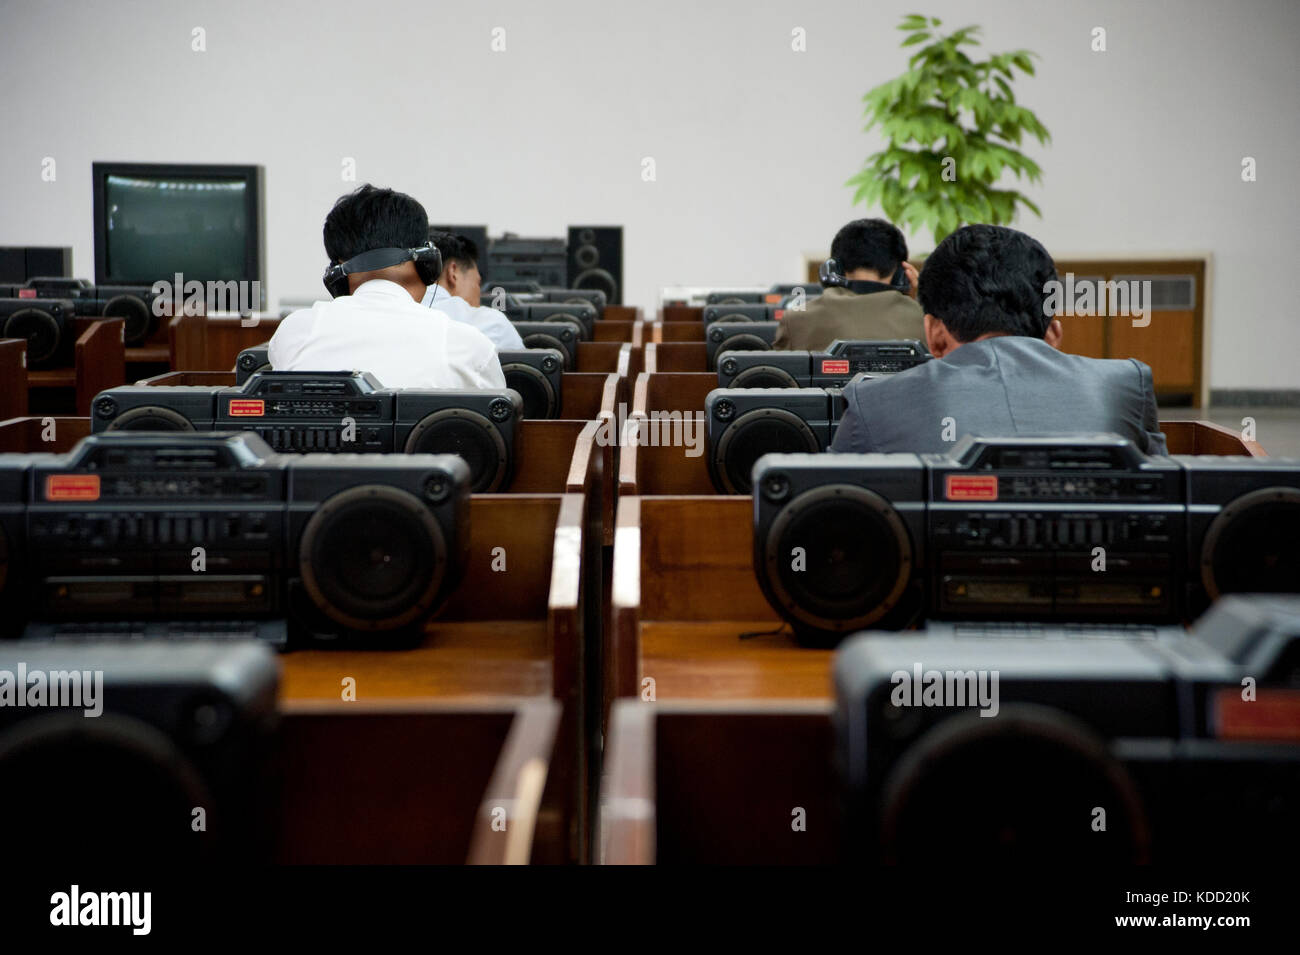 Des Nord coréens écoutent des CD à la grande maison des études du peuple de Pjöngyang le 9 octobre 2012 Grand People's Study House CD Library on Oktob Stockfoto